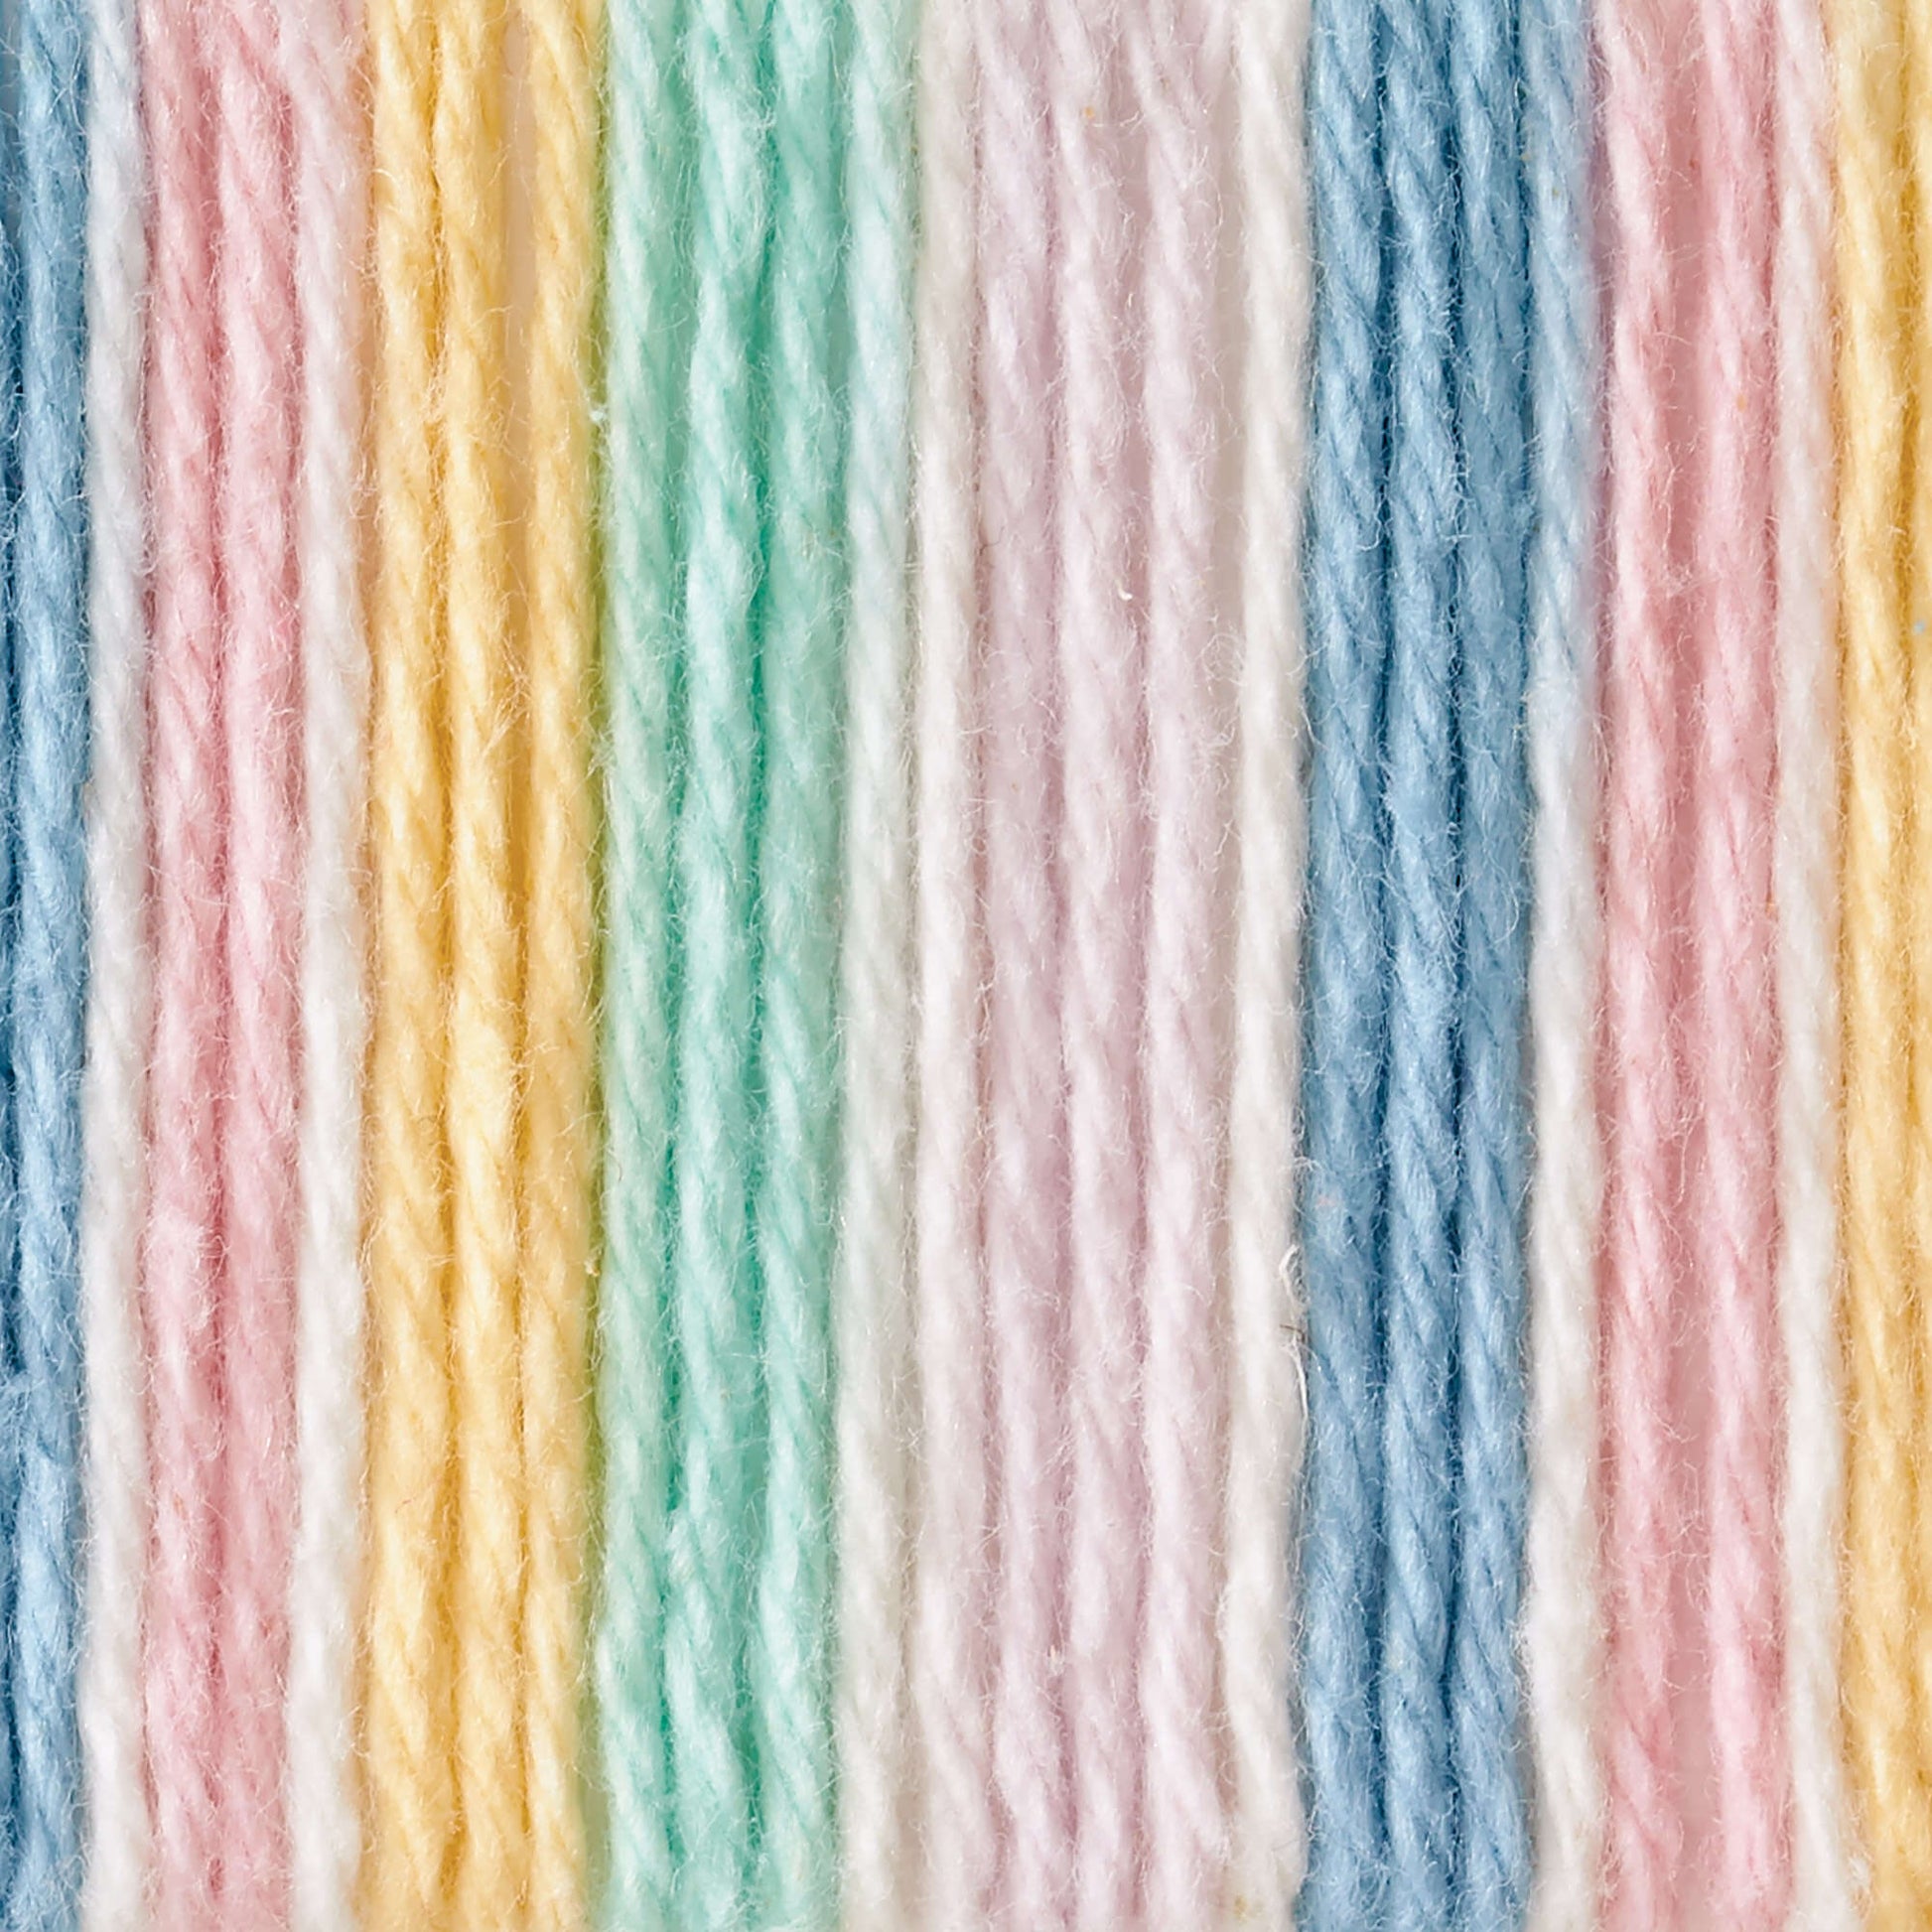 Lily Sugar'n Cream Cone Yarn (400g/14oz) - Discontinued Shades Pretty Pastels Ombre